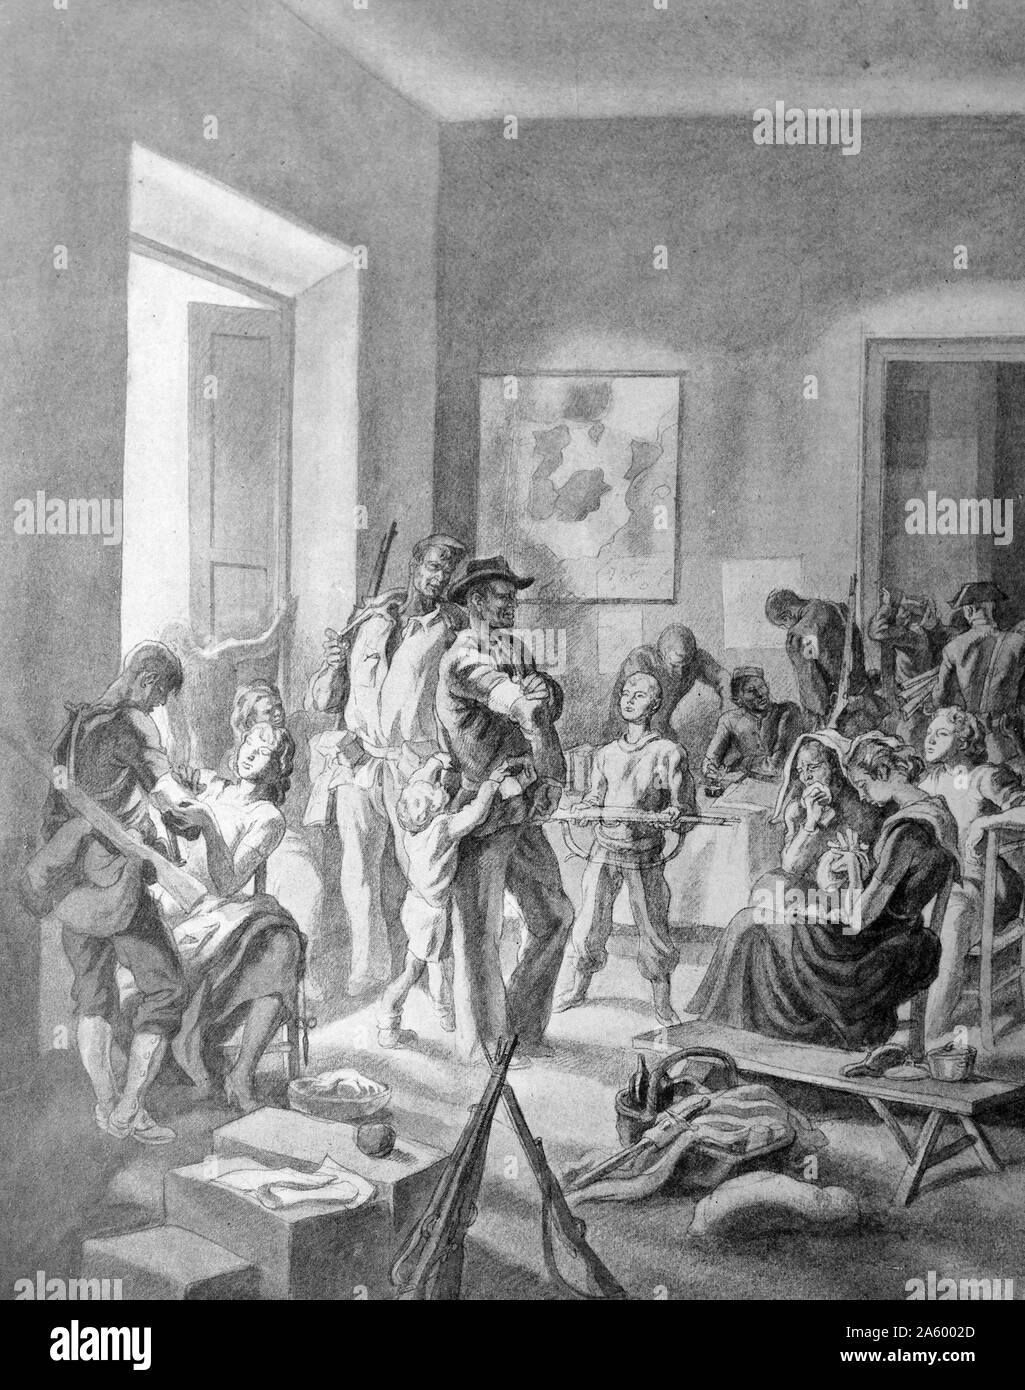 Propaganda-Illustration von Carlos Saenz De Tejada Darstellung nationalistische Familien unter Belagerung in einem Schulgebäude während des spanischen Bürgerkriegs. Datierte 1937 Stockfoto